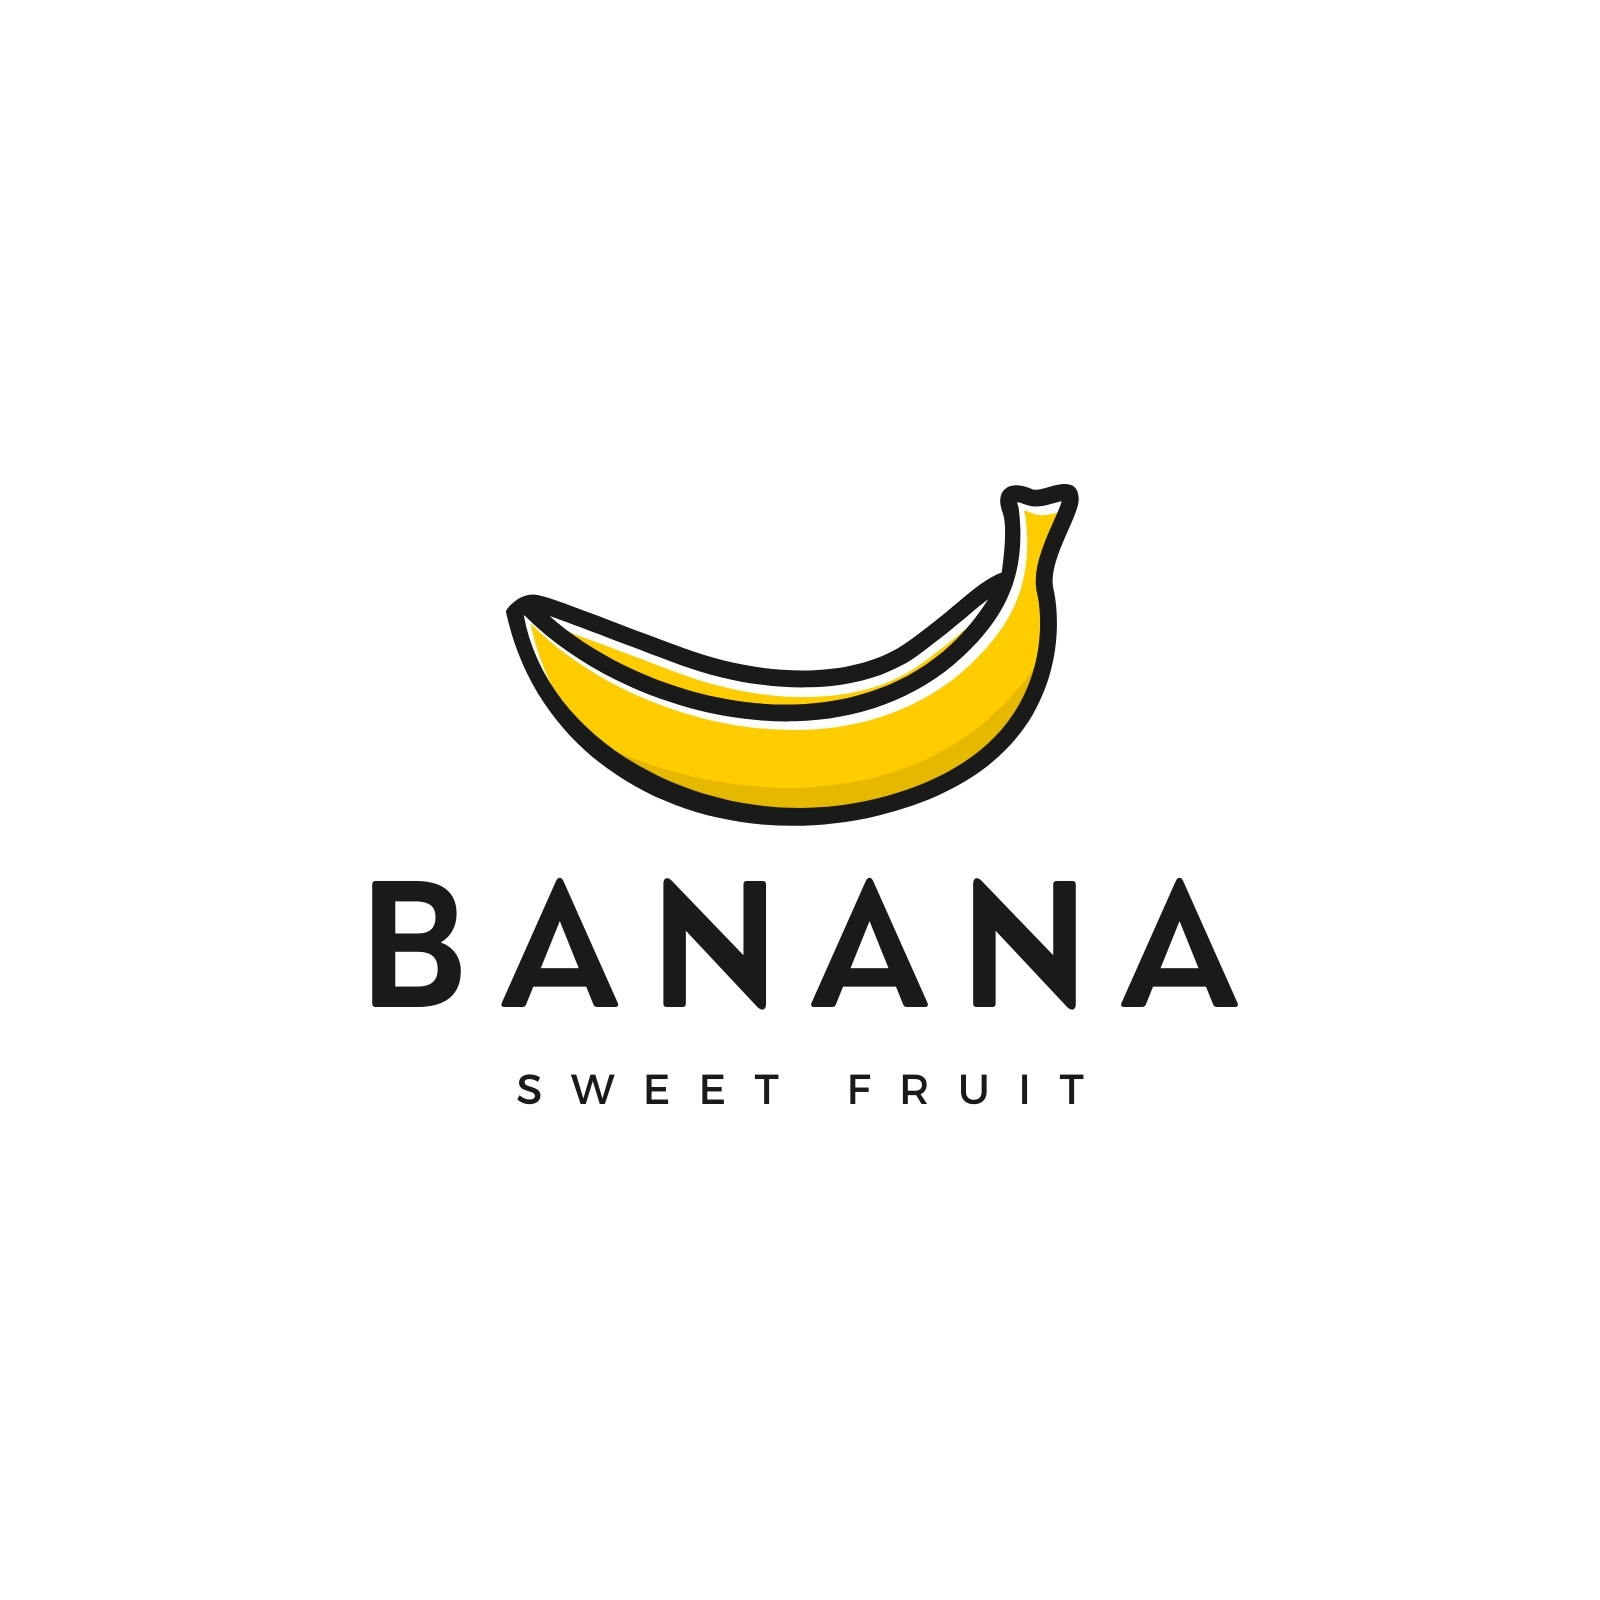 Banana people esports logo vector free download